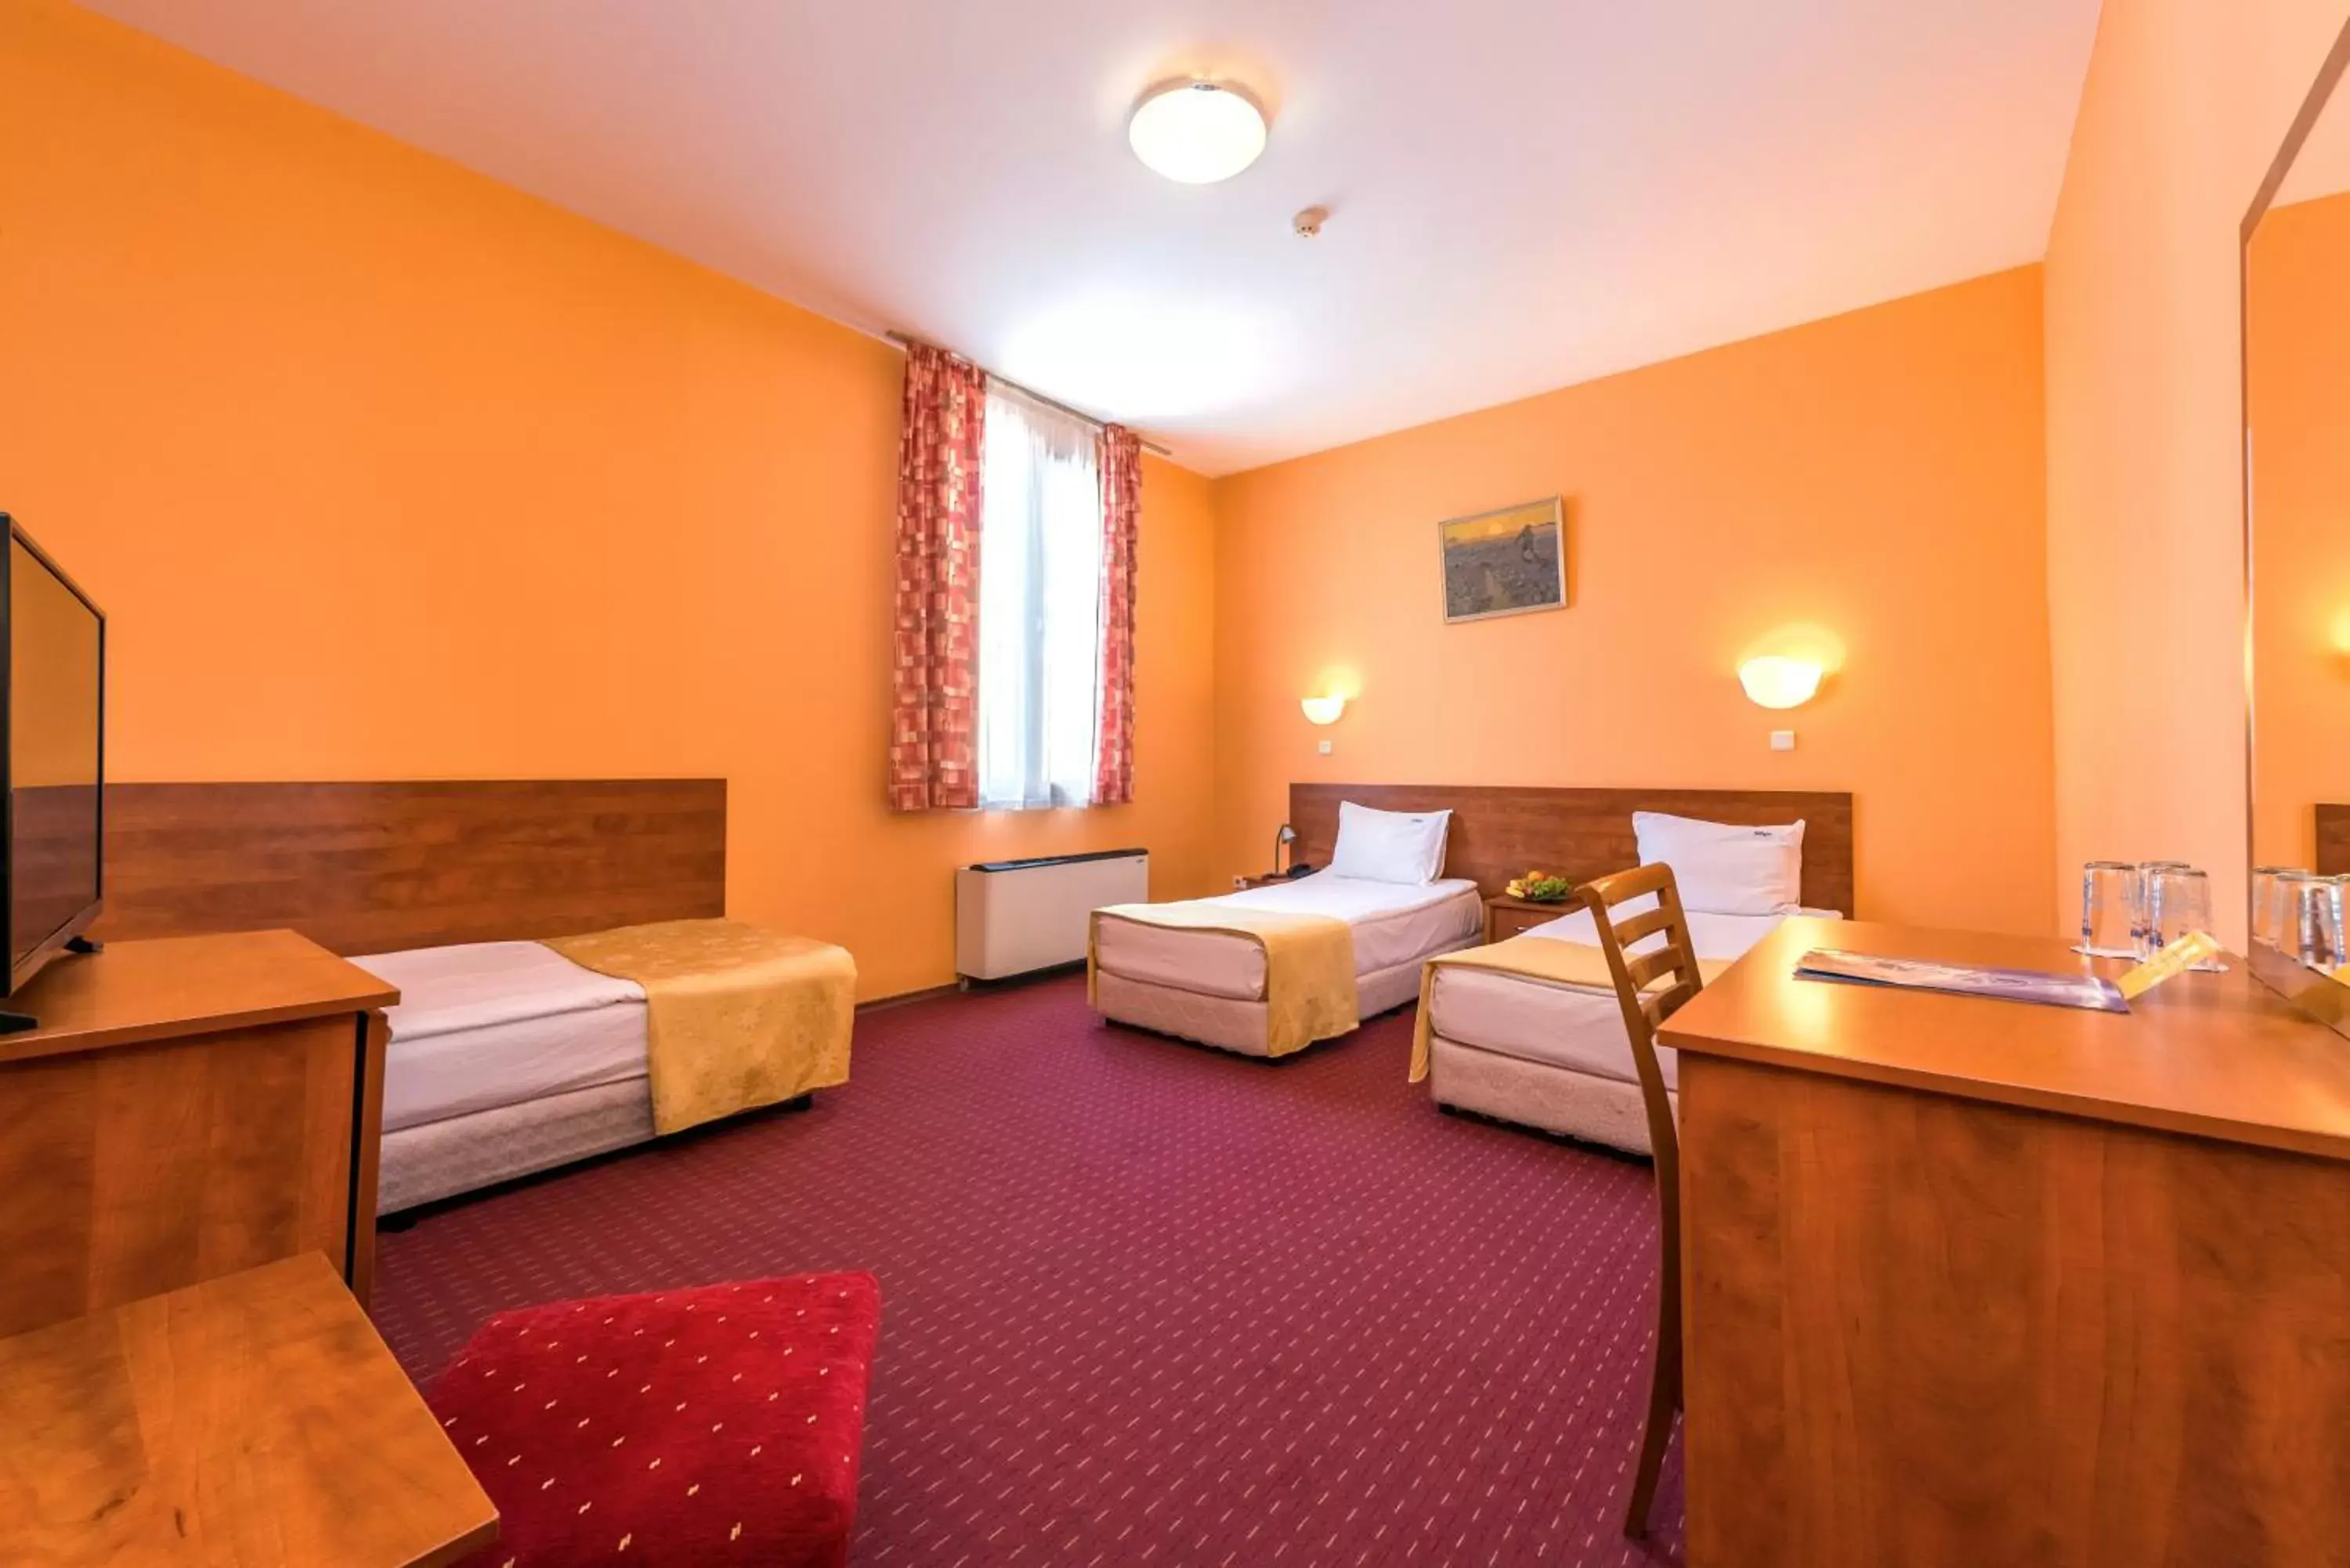 Bedroom in Sveta Sofia Hotel